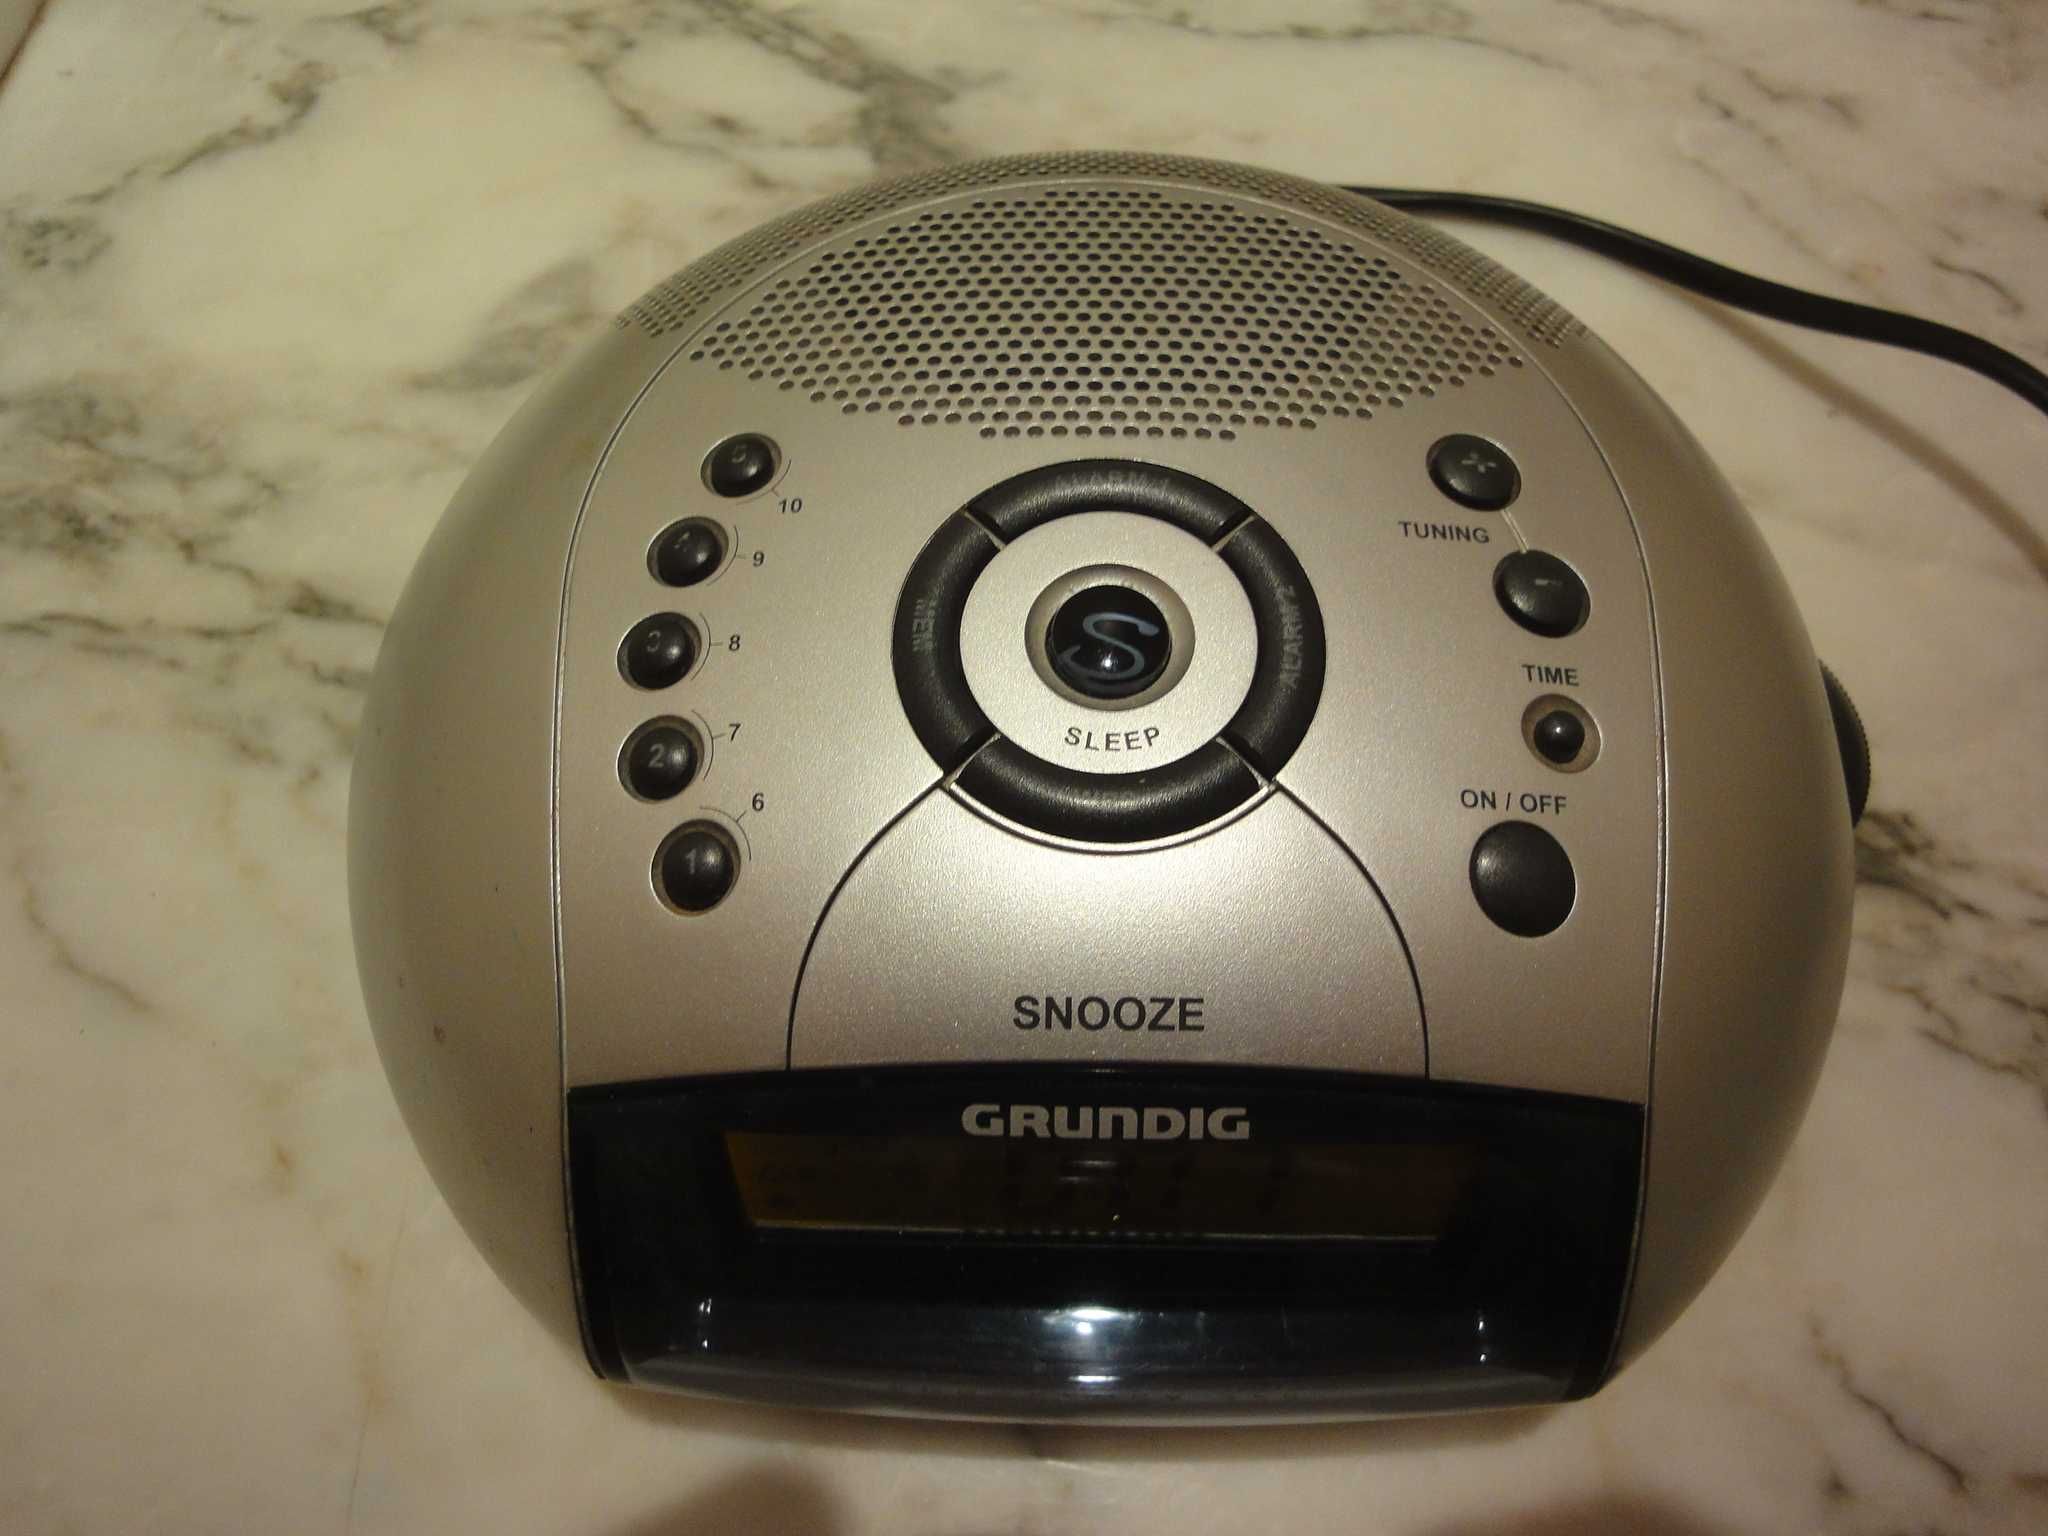 Grundig Sonoclock 420, PRC – Електронний FM-радіоприймач з годинником.